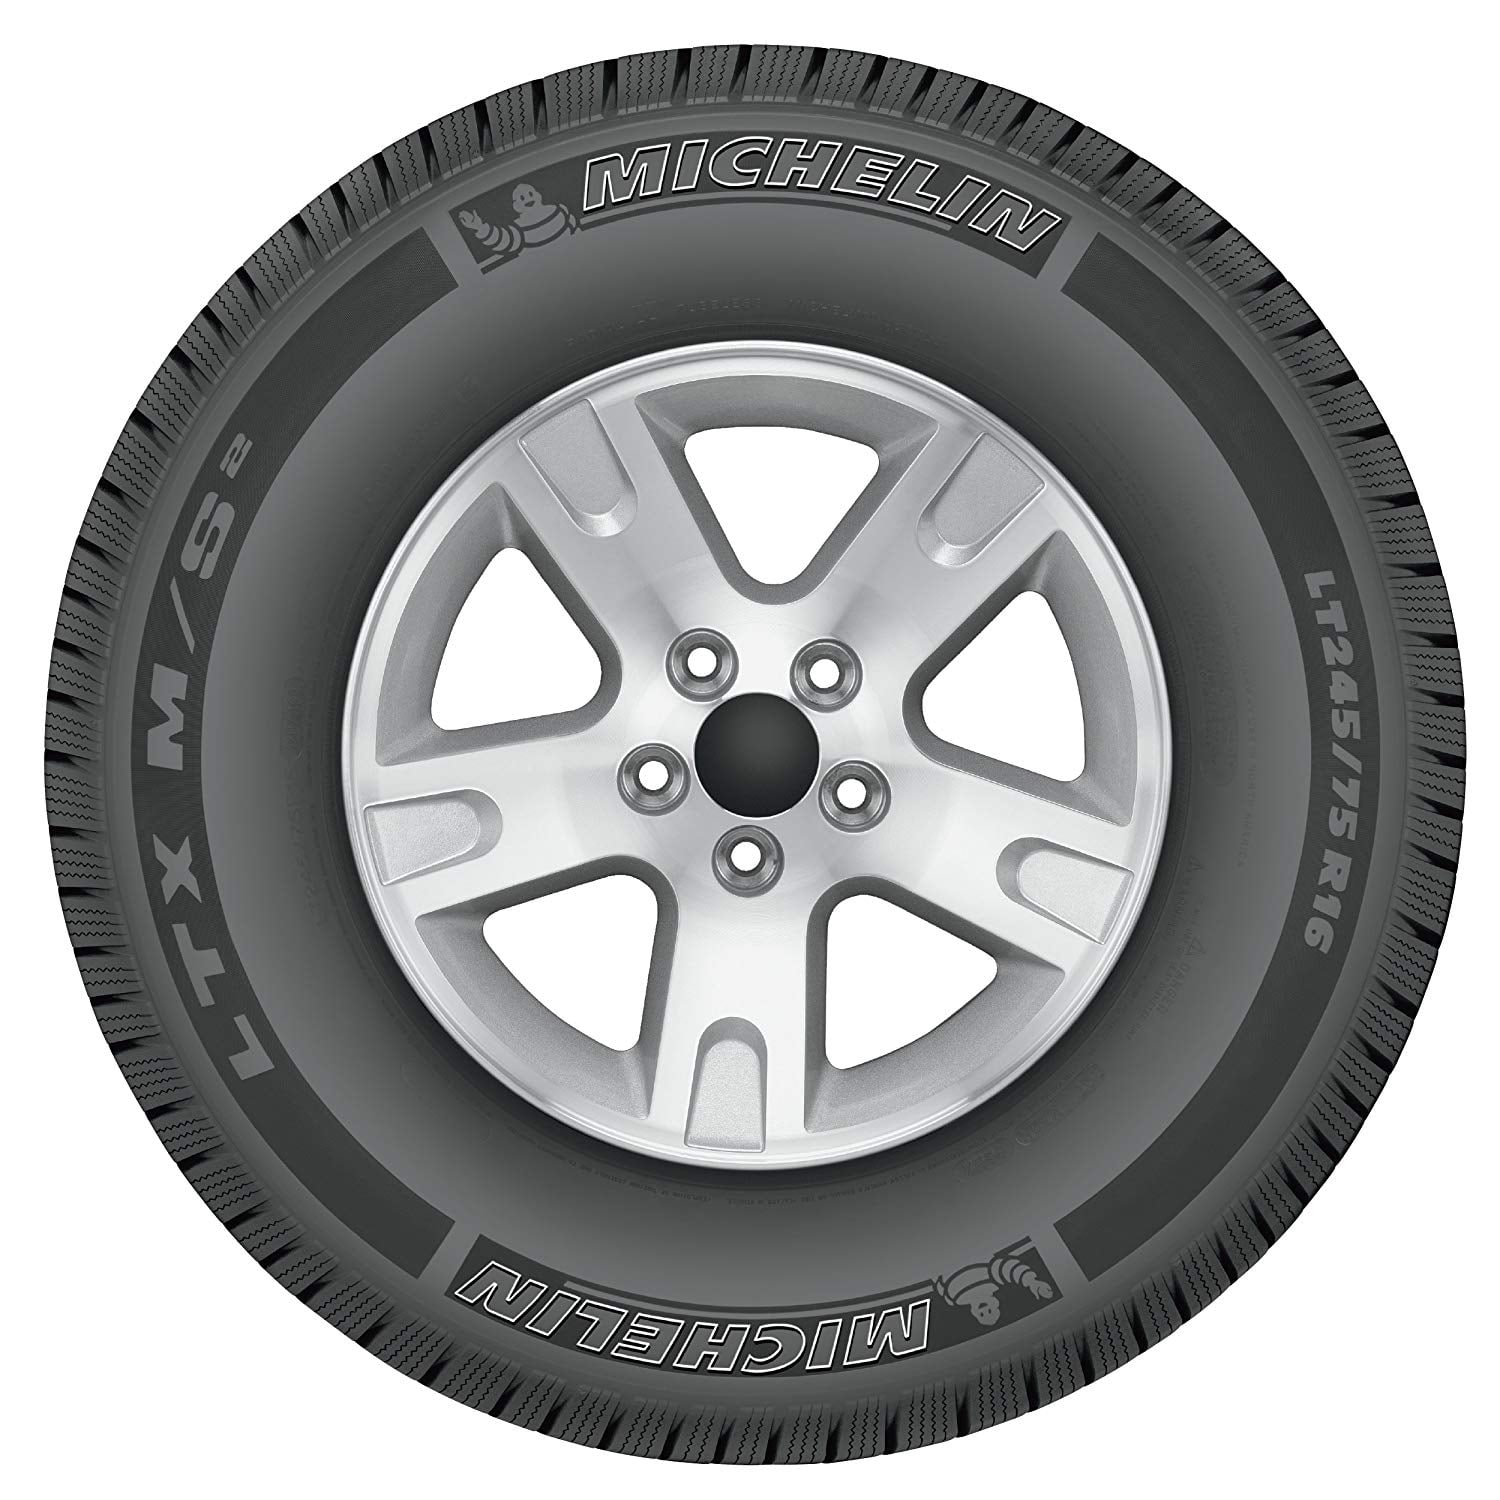 Michelin LTX M/S2 265/70R17 113 T Tire 